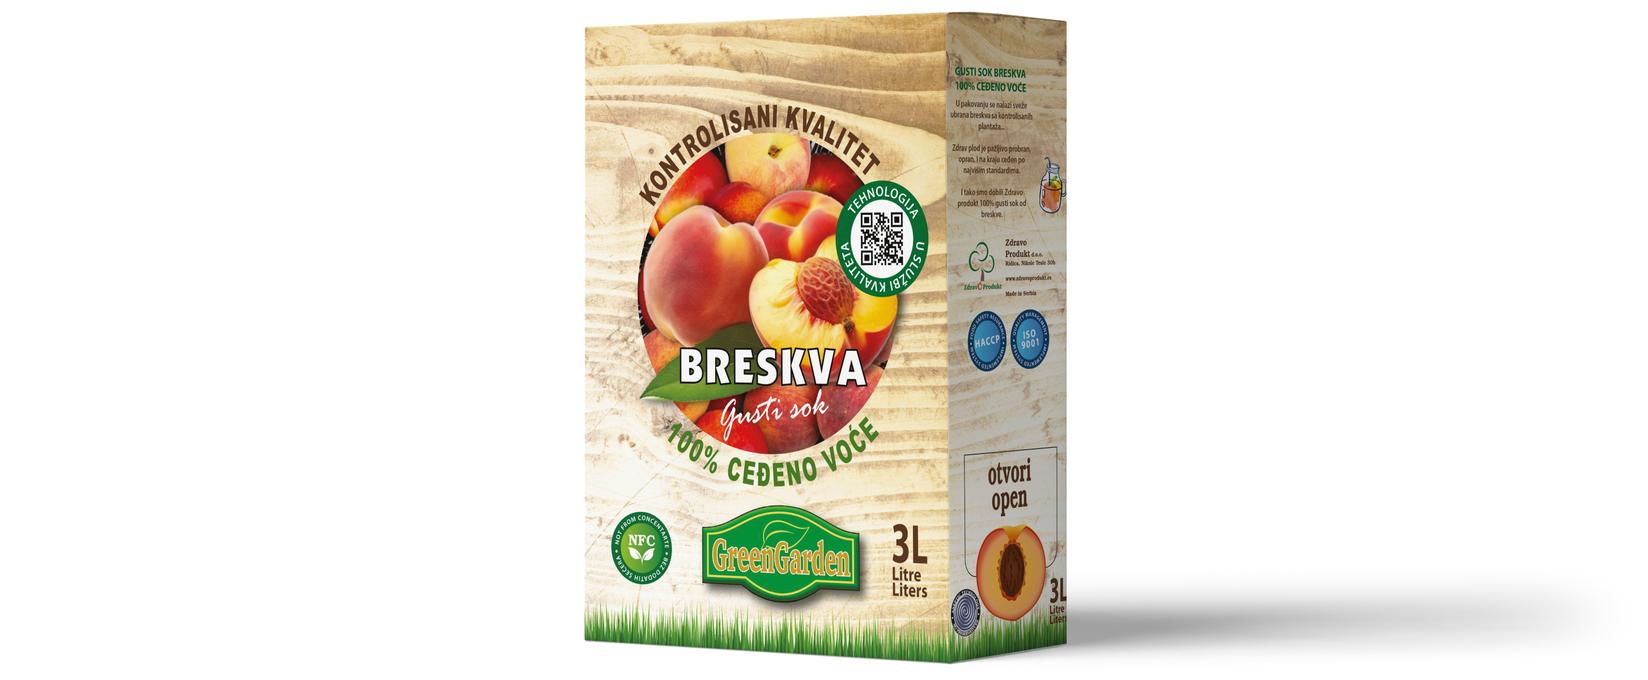 GREEN GARDEN Matični sok Breskva 100%, BAG IN BOX, 3l